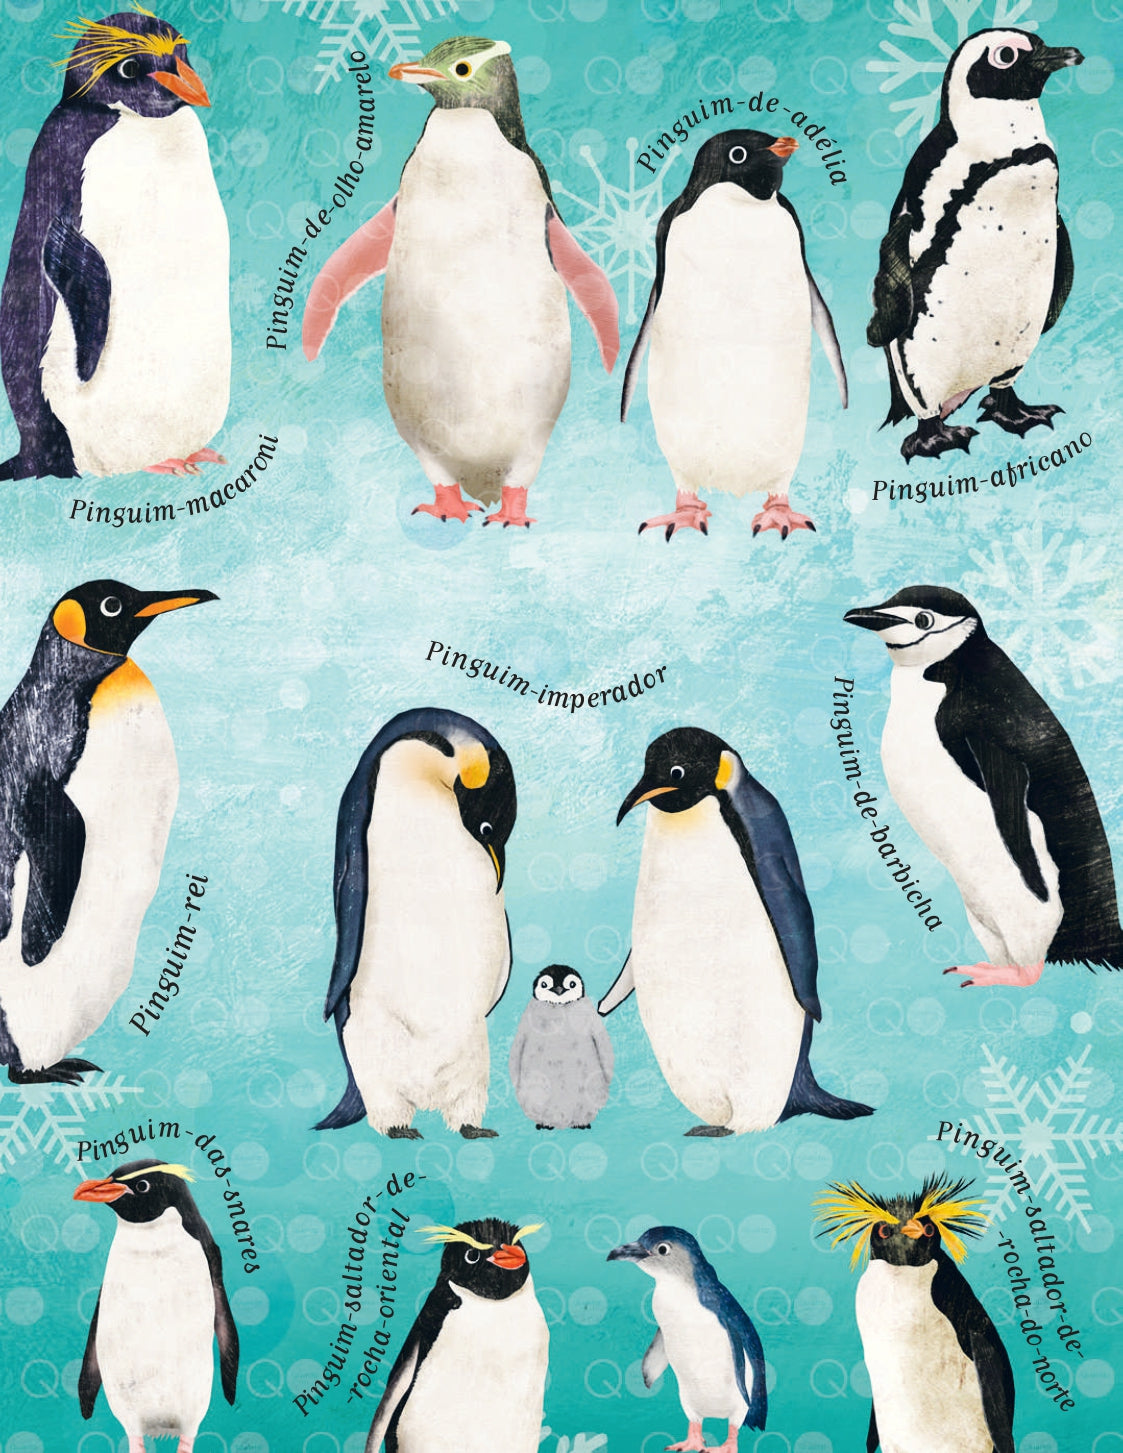 10 Razões para Gostares do Pinguim